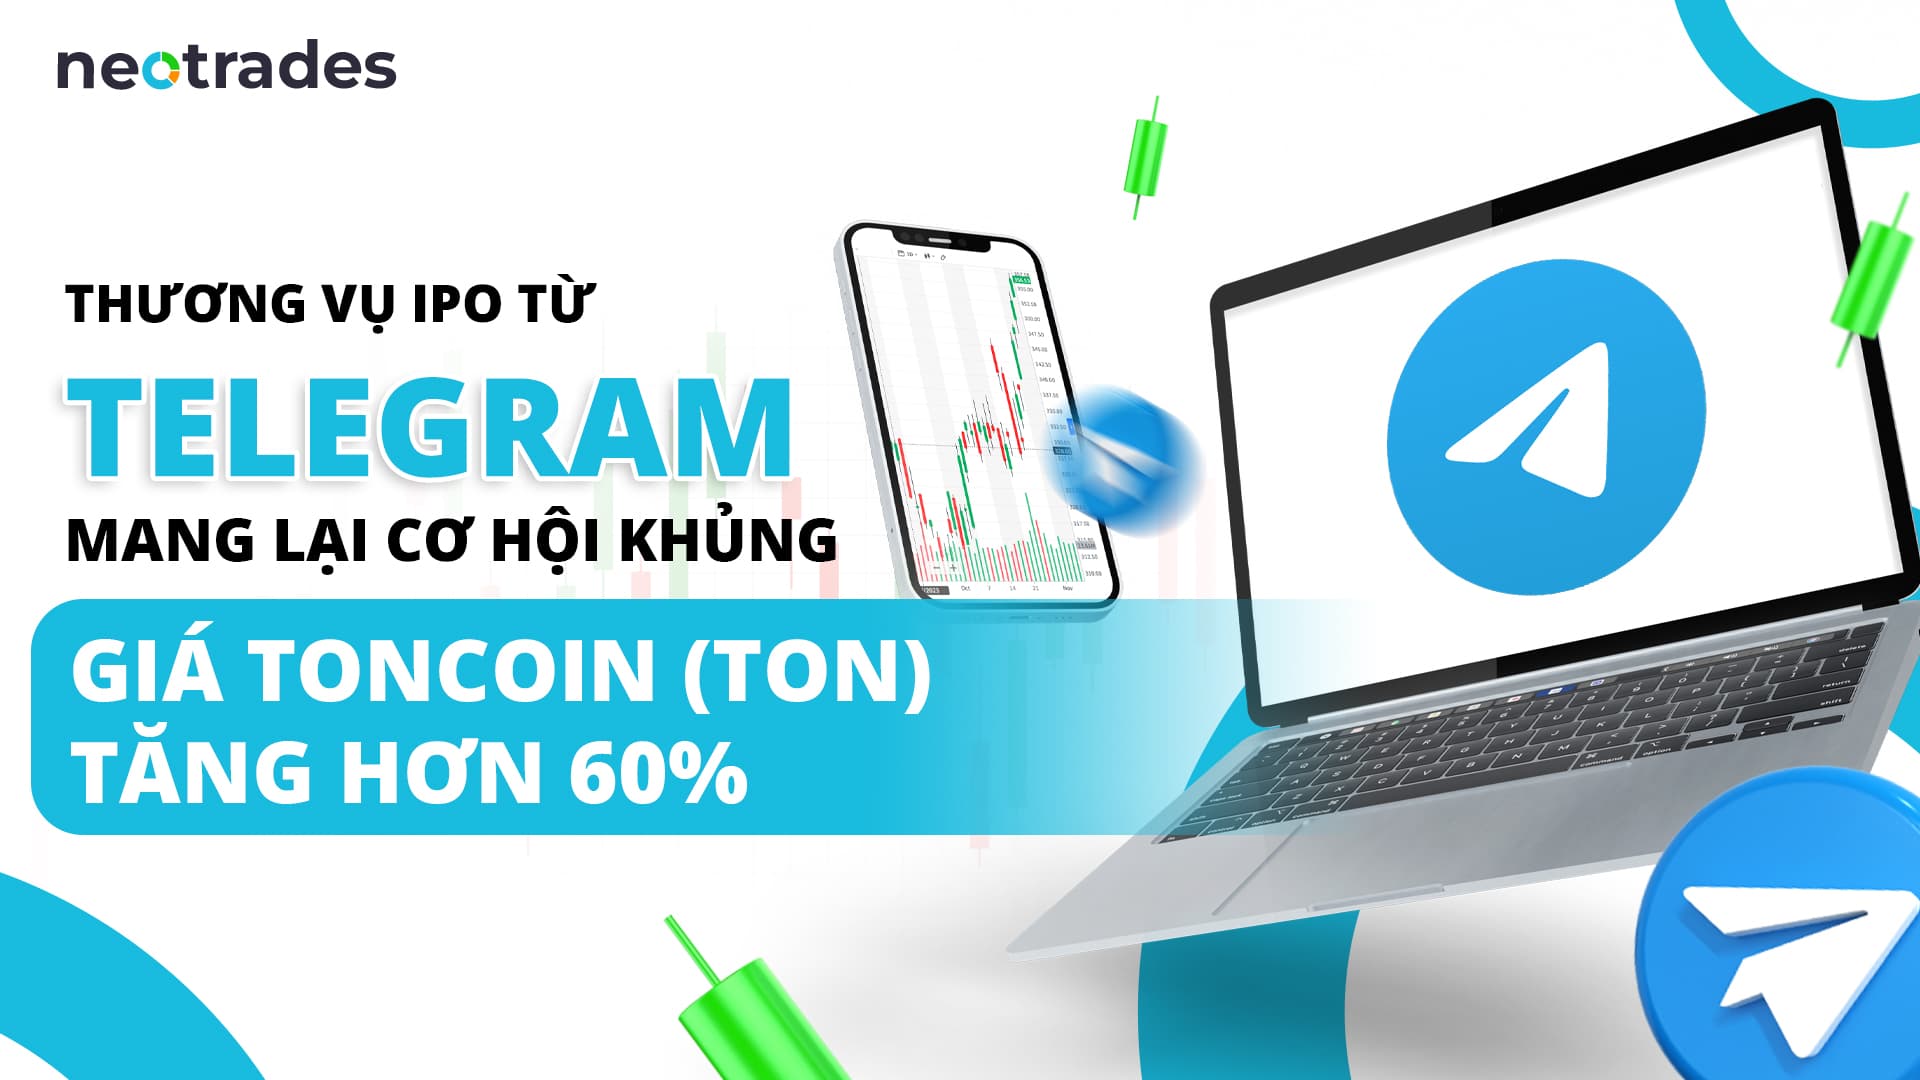 IPO Telegram: Cơ hội khủng với giá Toncoin (TON) tăng 60%